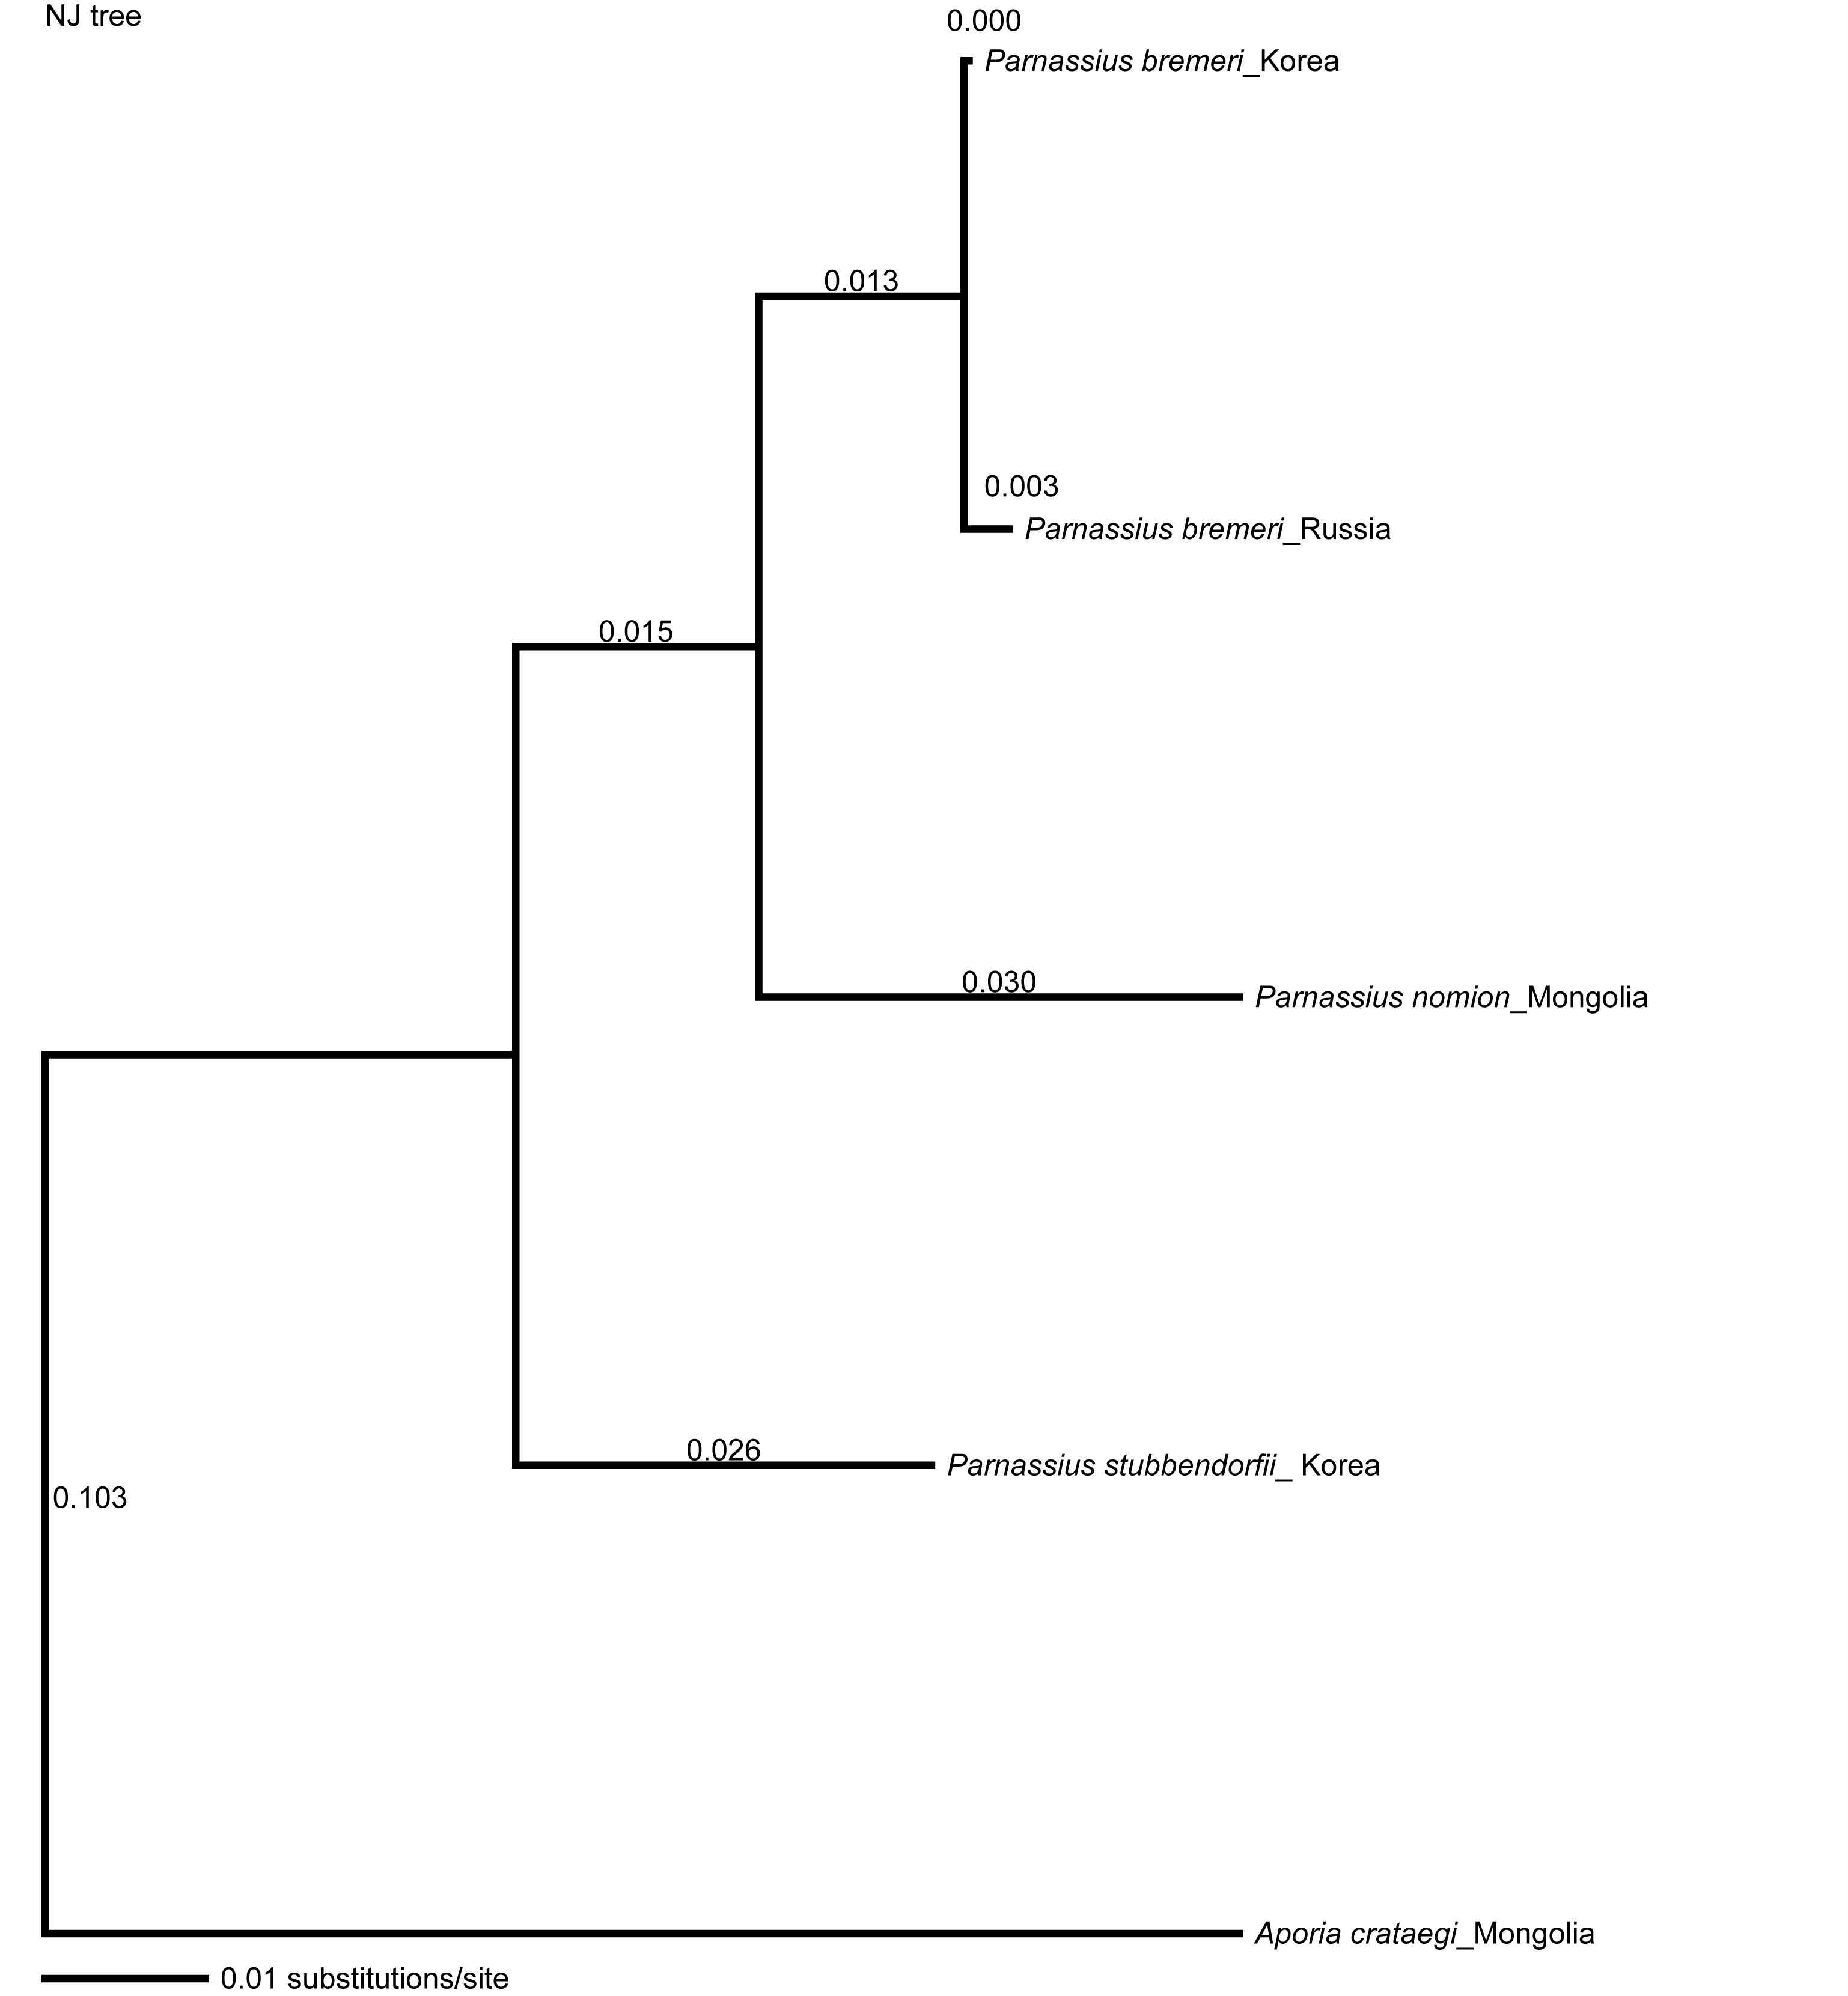 그림 42. COI 유전자를 이용한 Parnassius 속의 NJ tree